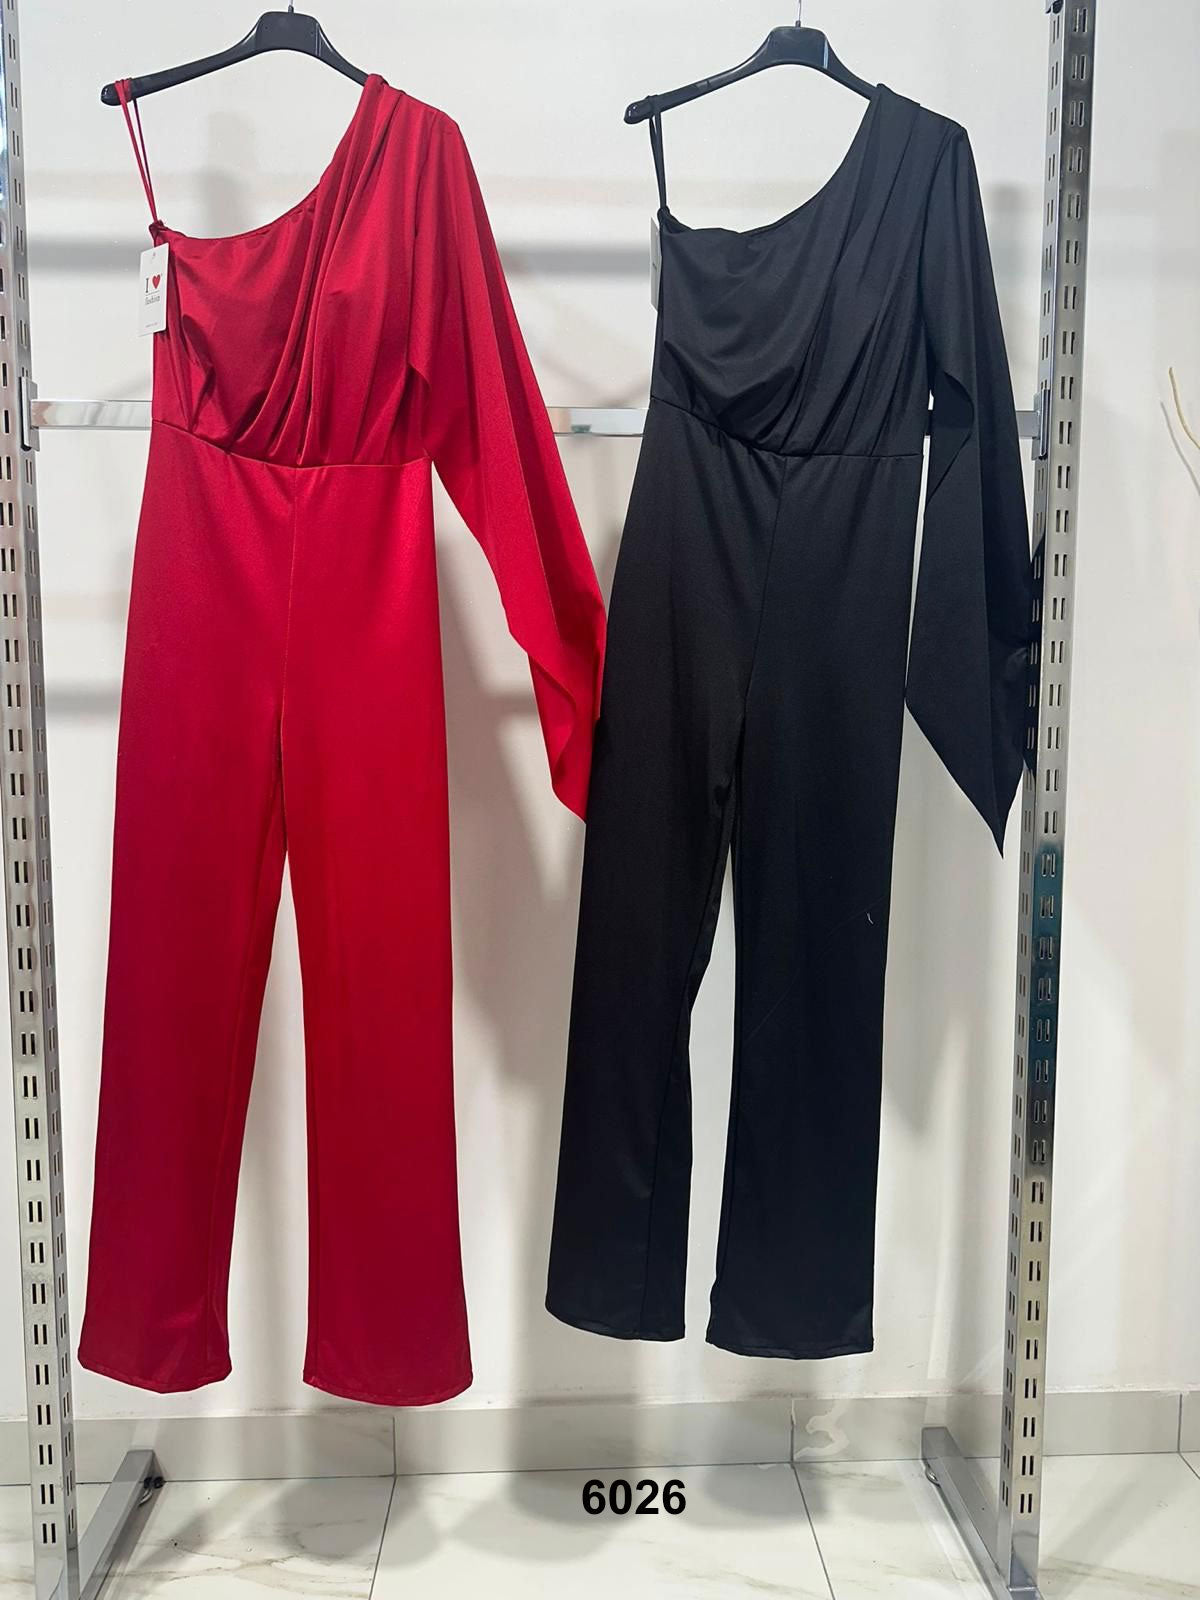 Tuta Elegante Monospalla Manica con Drappeggio Casual Jumpsuit Pantalone Palazzo in 2 Colori - 6026